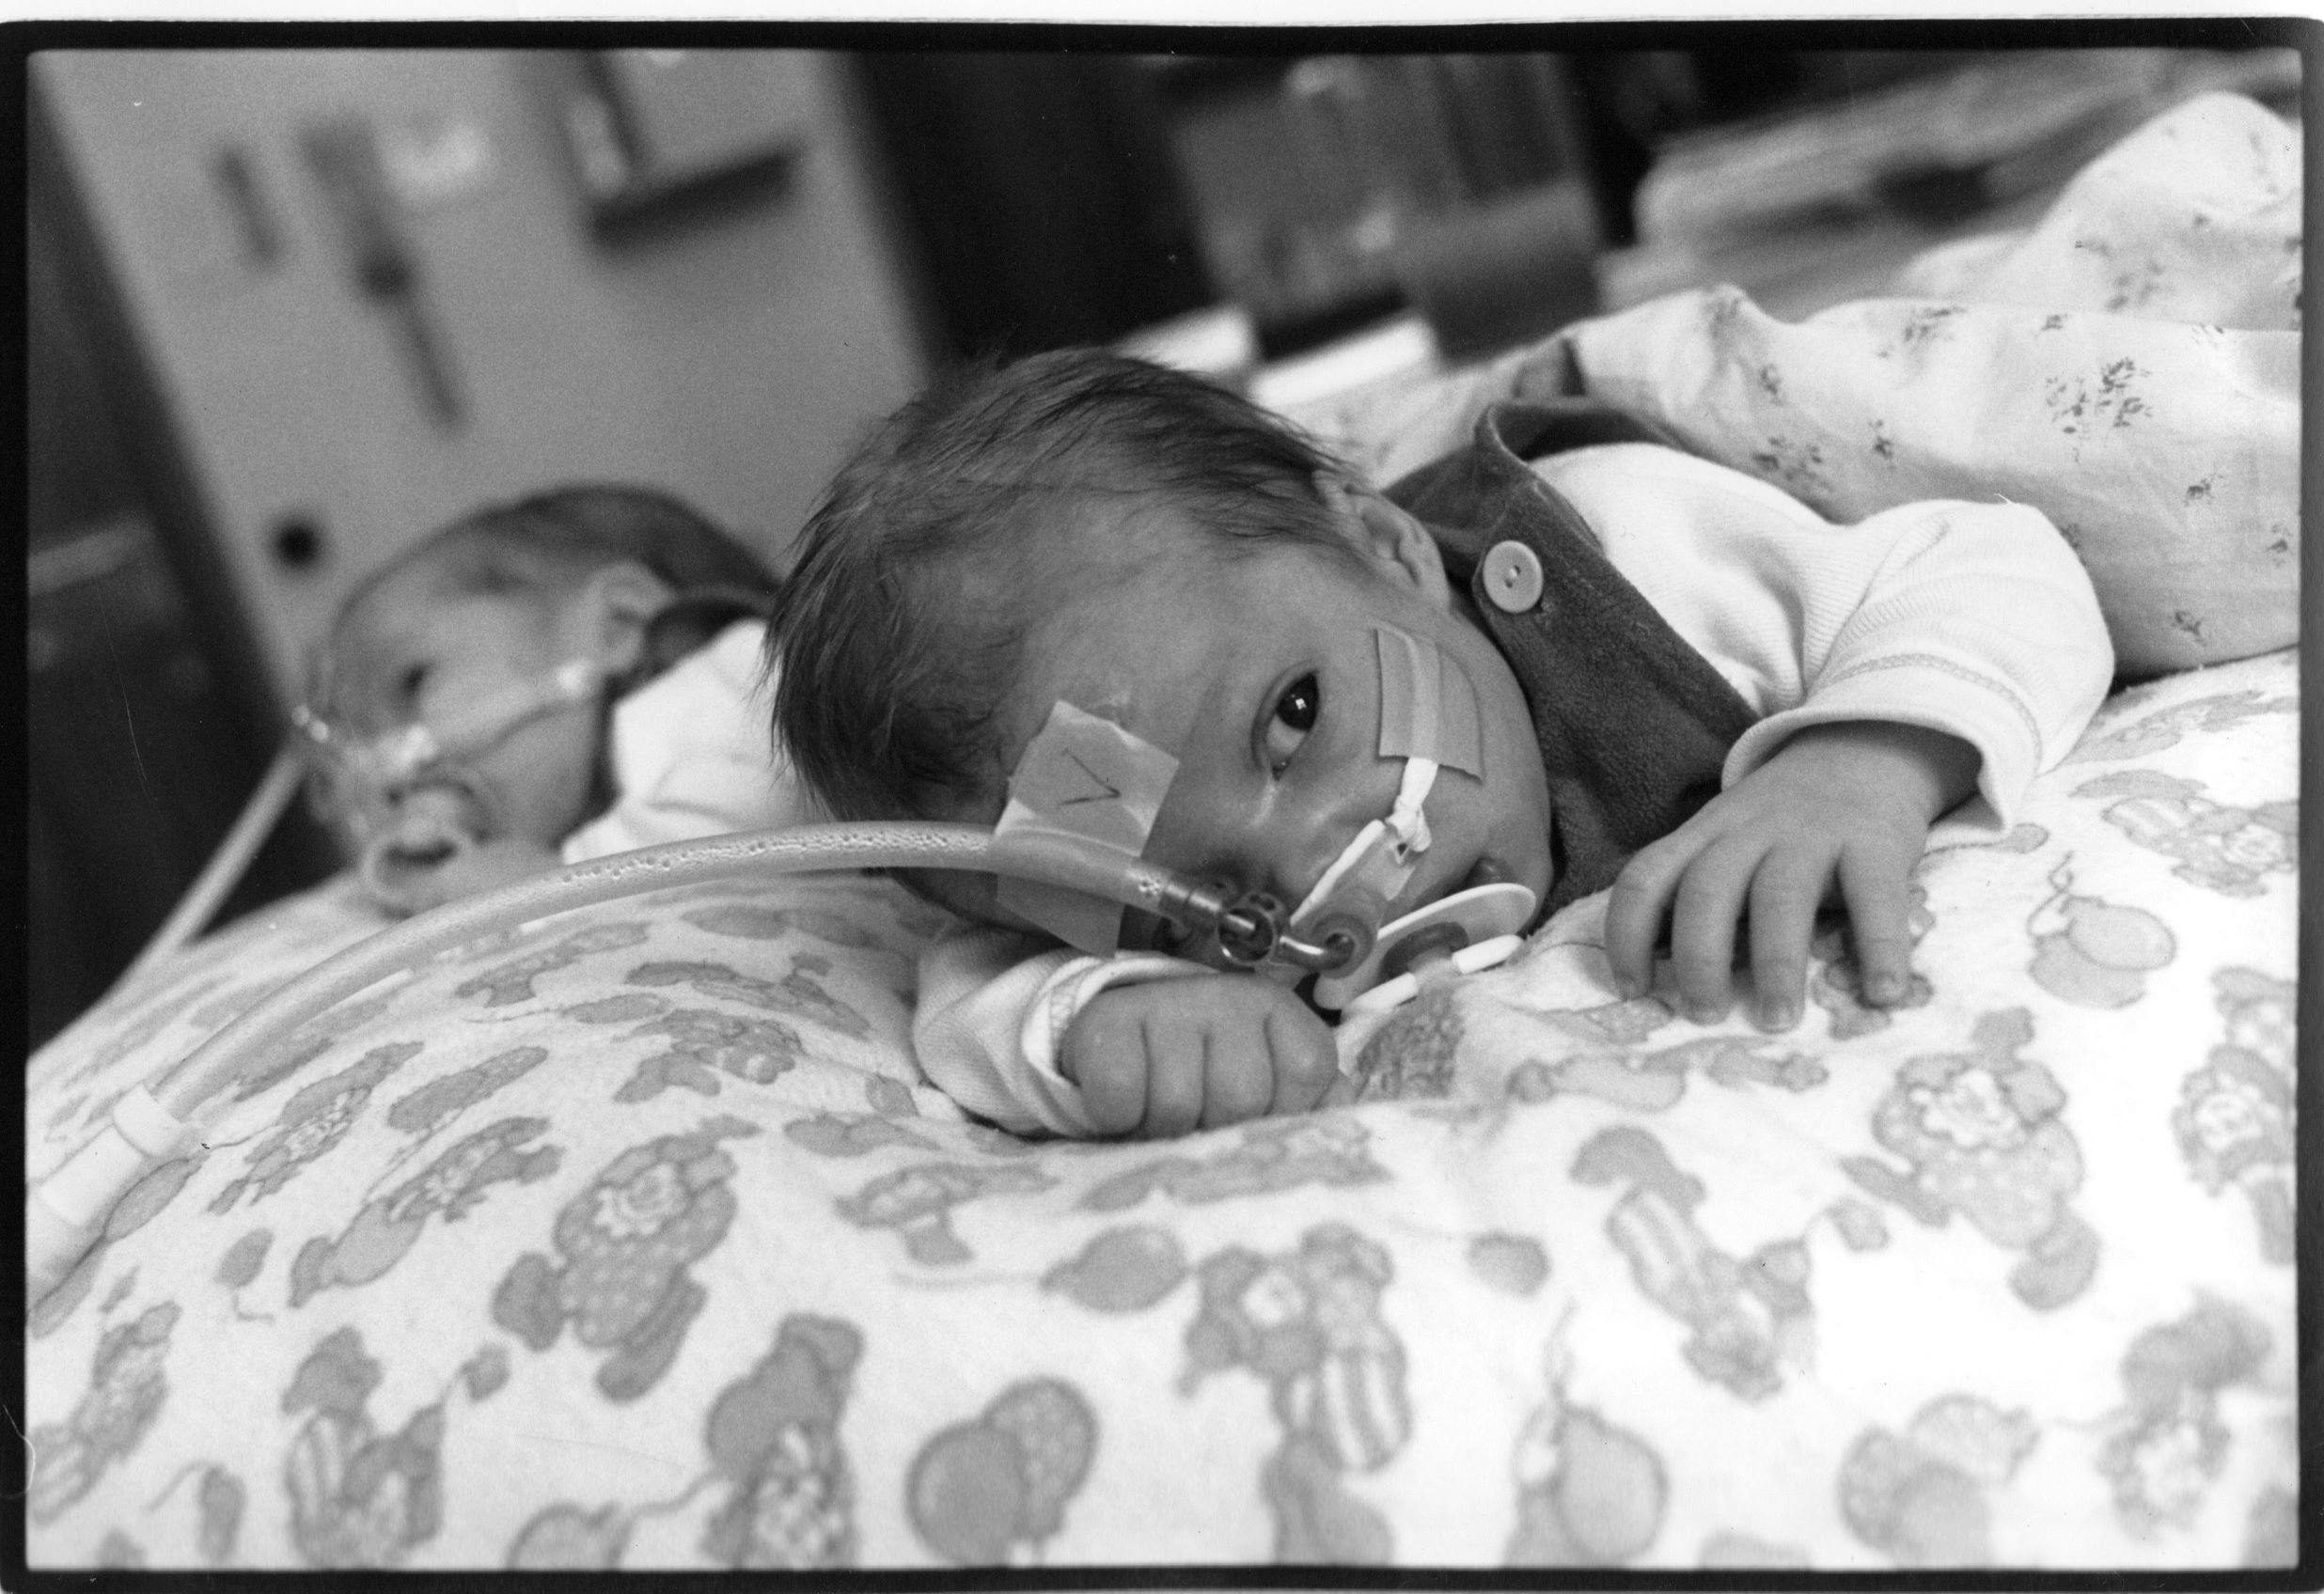 Tvillingerne i CPAP-behandling.&nbsp;
